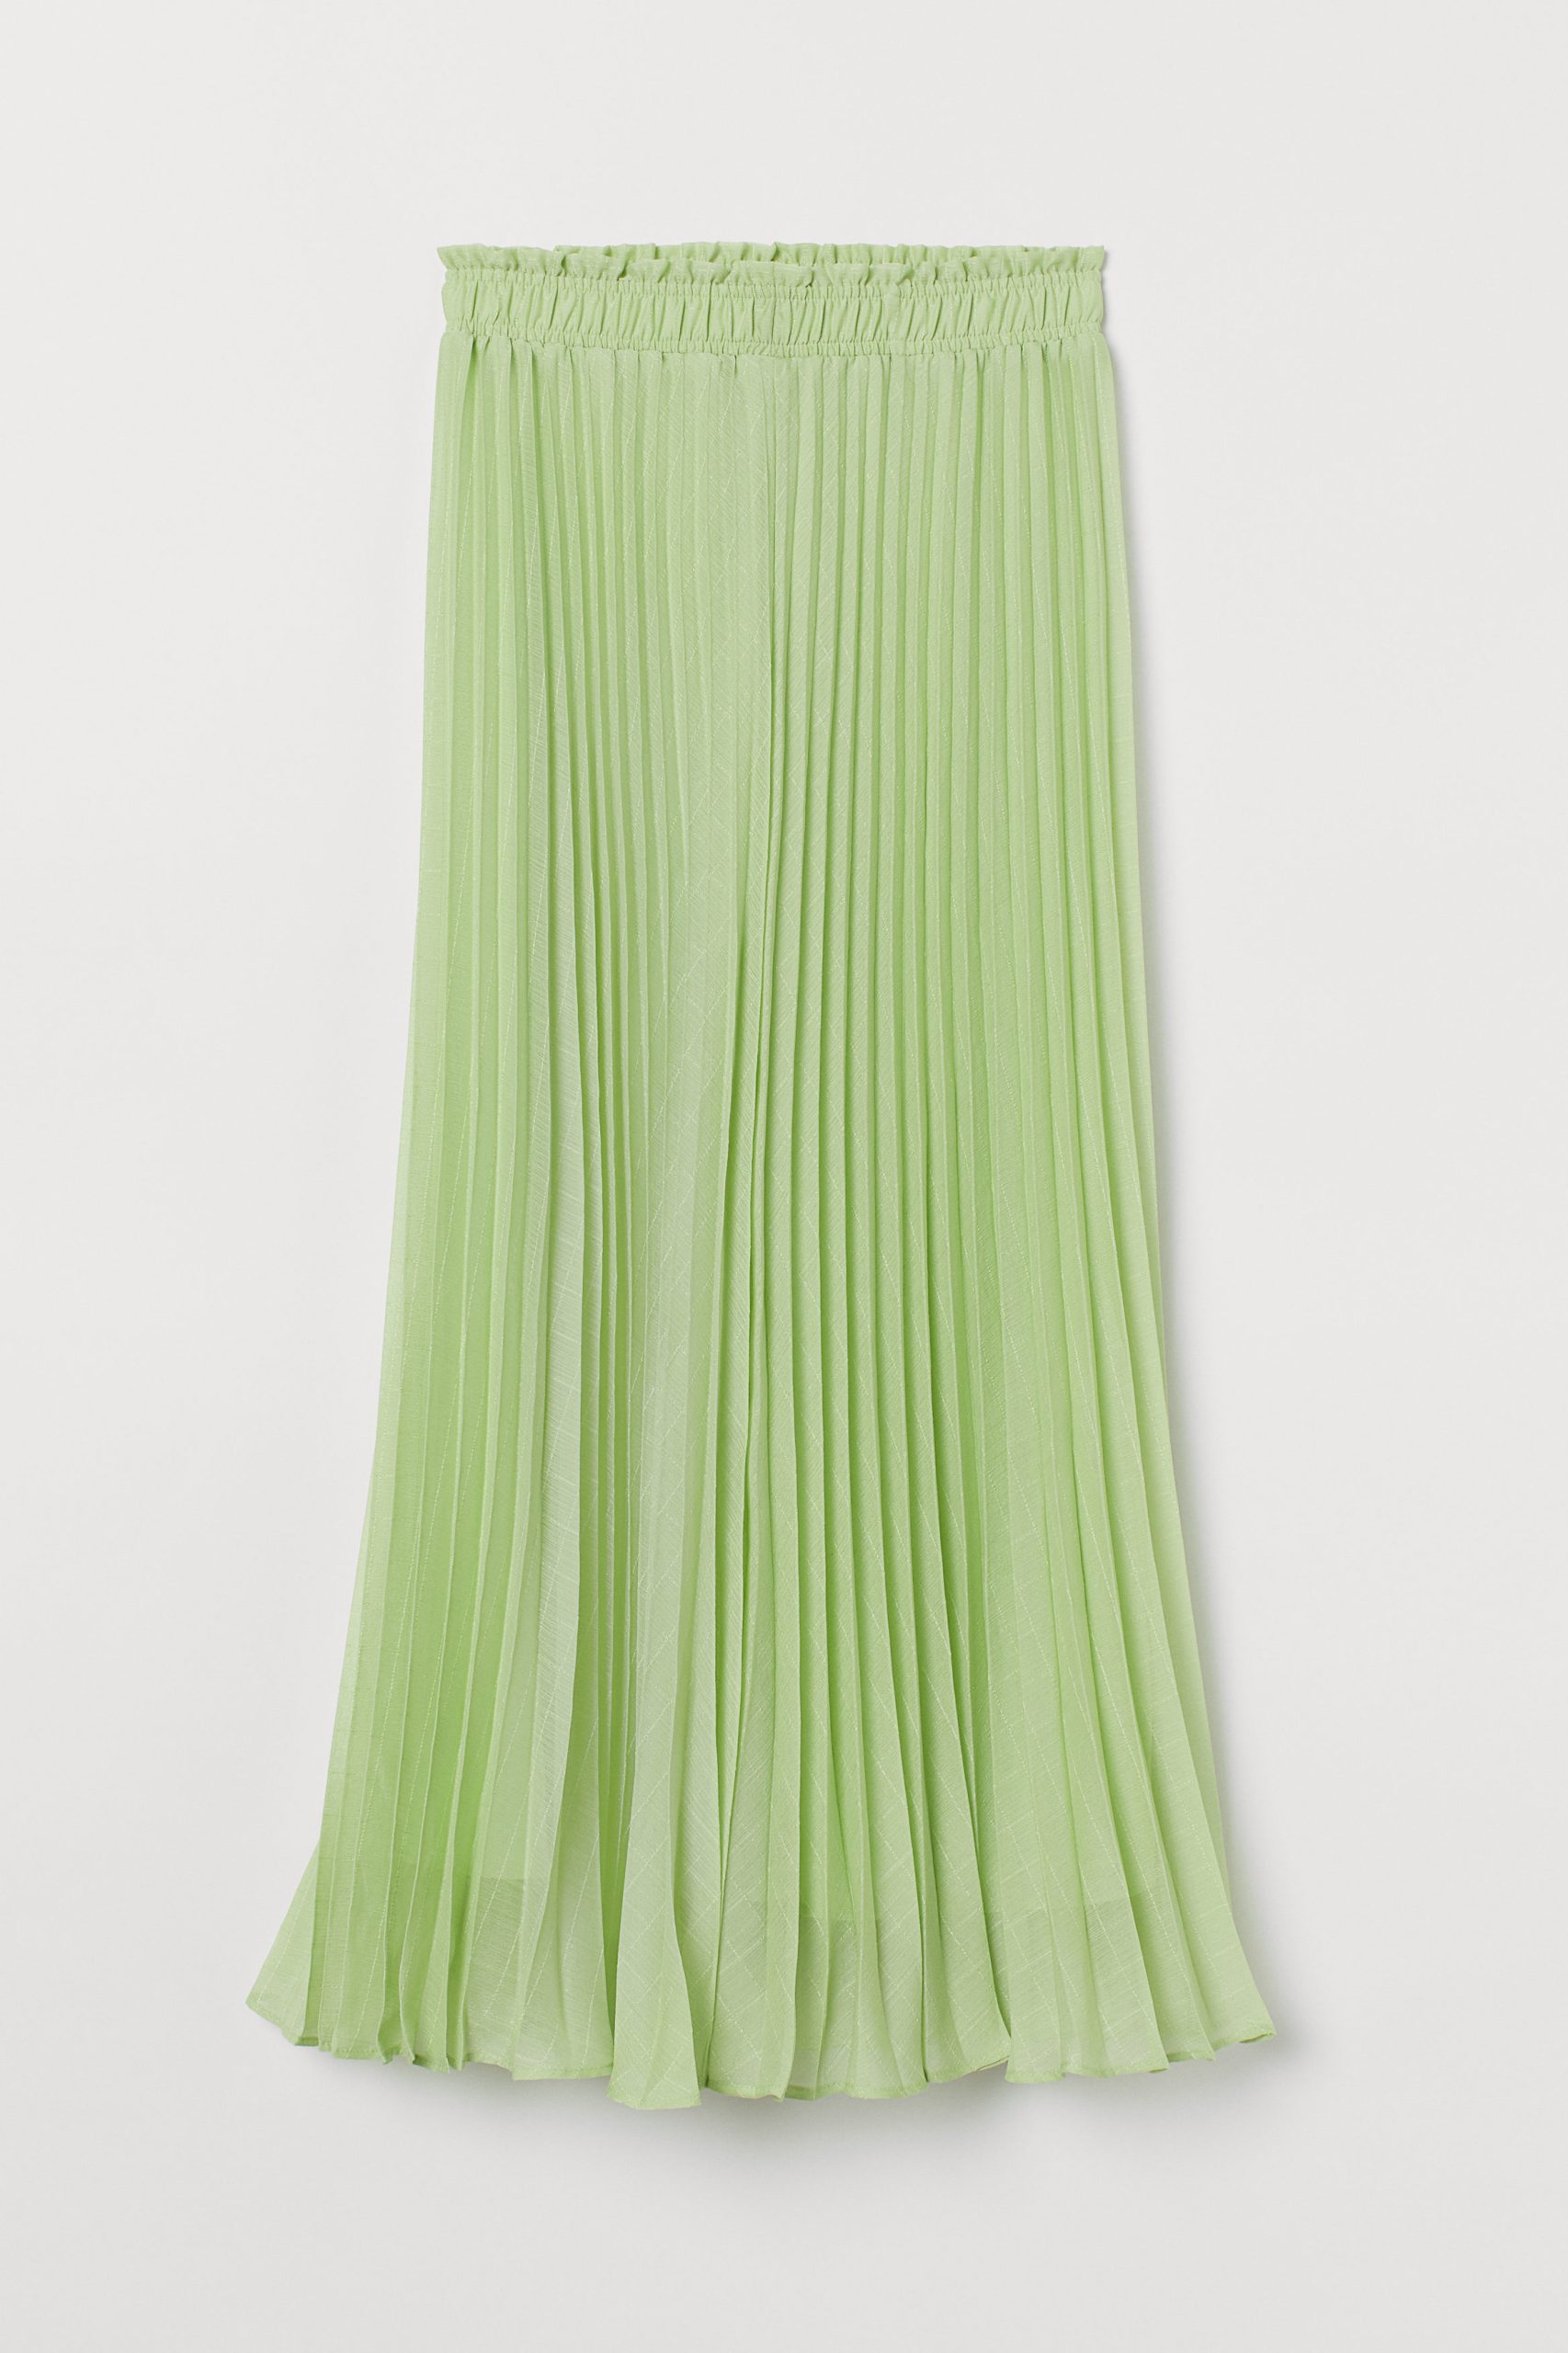 En grön kjol – dagens färg!